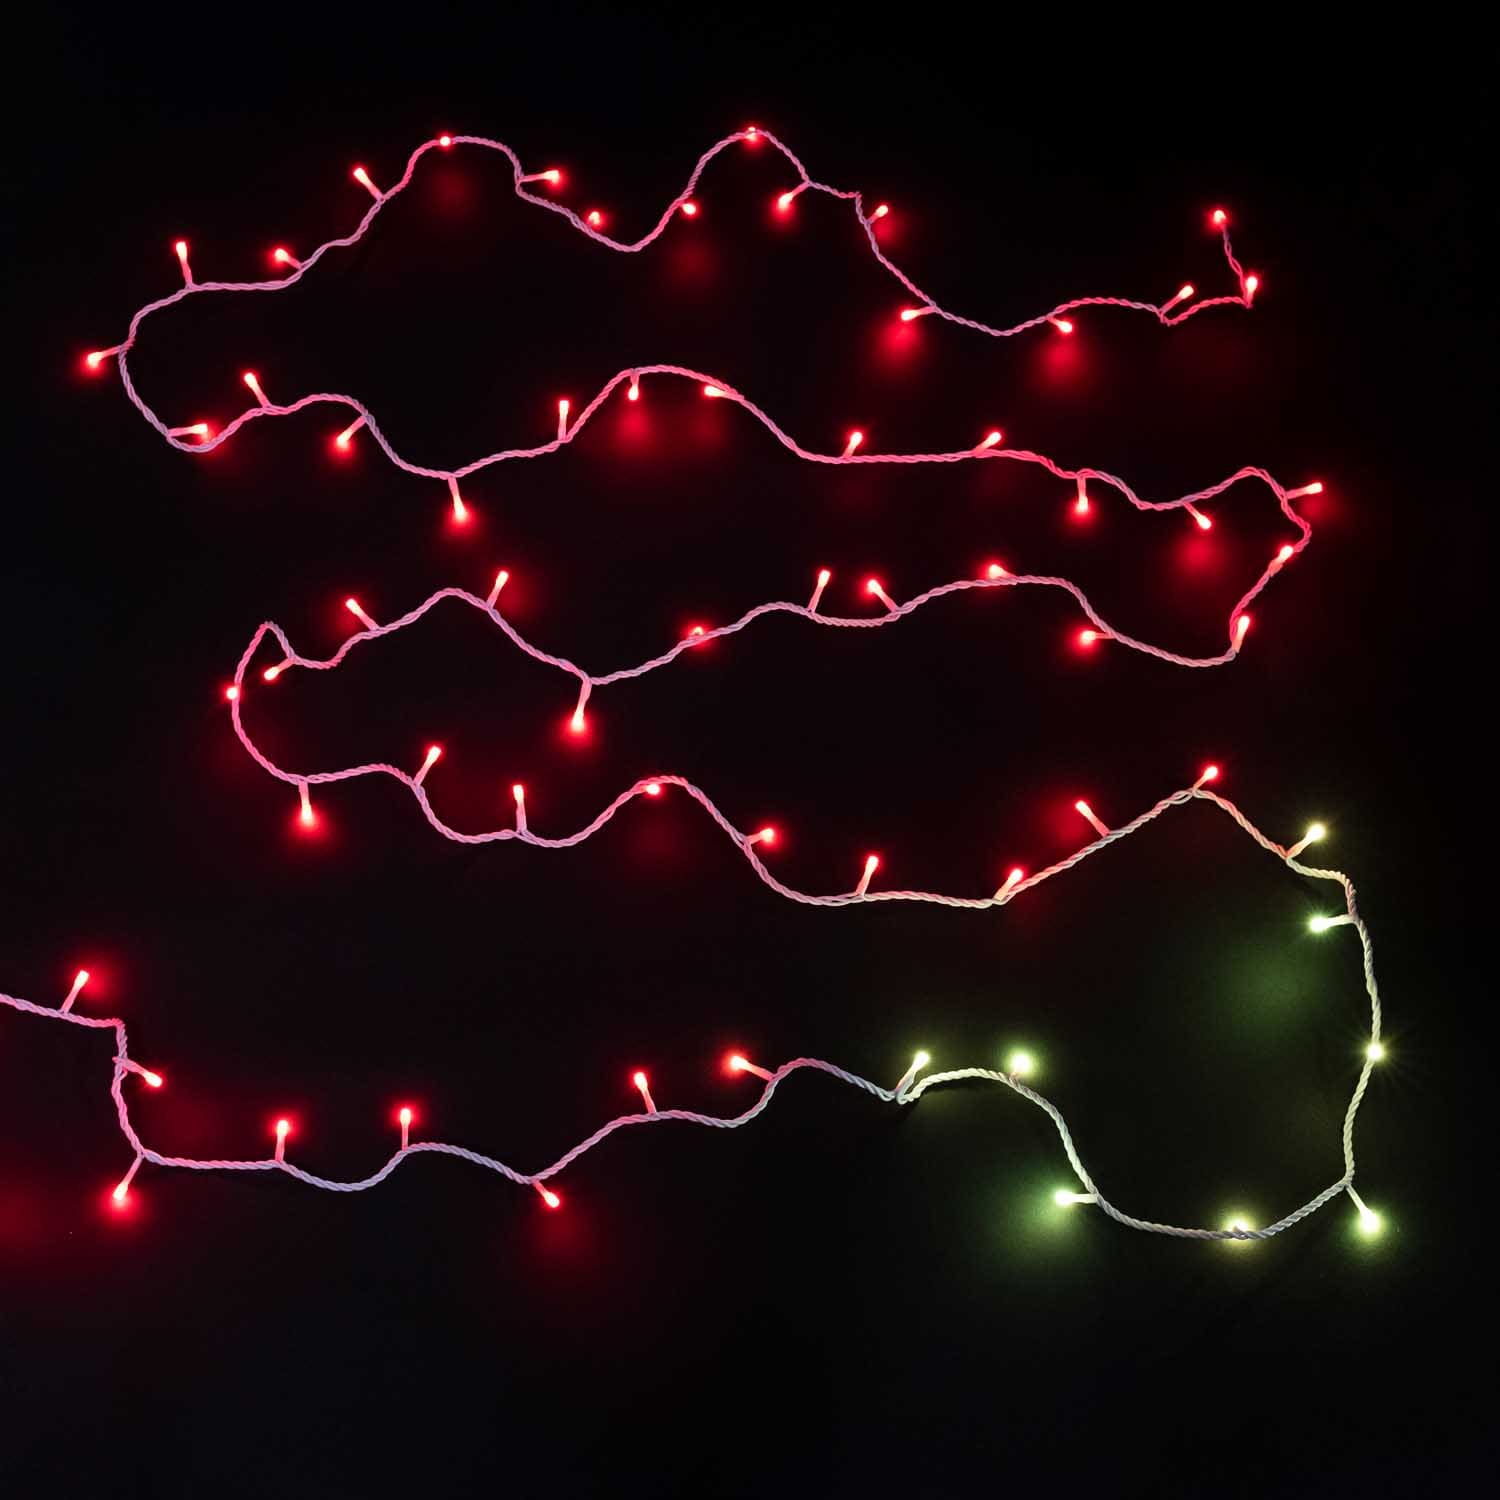 Качественная картинка Прогаммируемая светодиодная гирлянда-нить Laitcom, 10 м, 105 LED, IP 54, мульти AUG100-8-1EPRGB